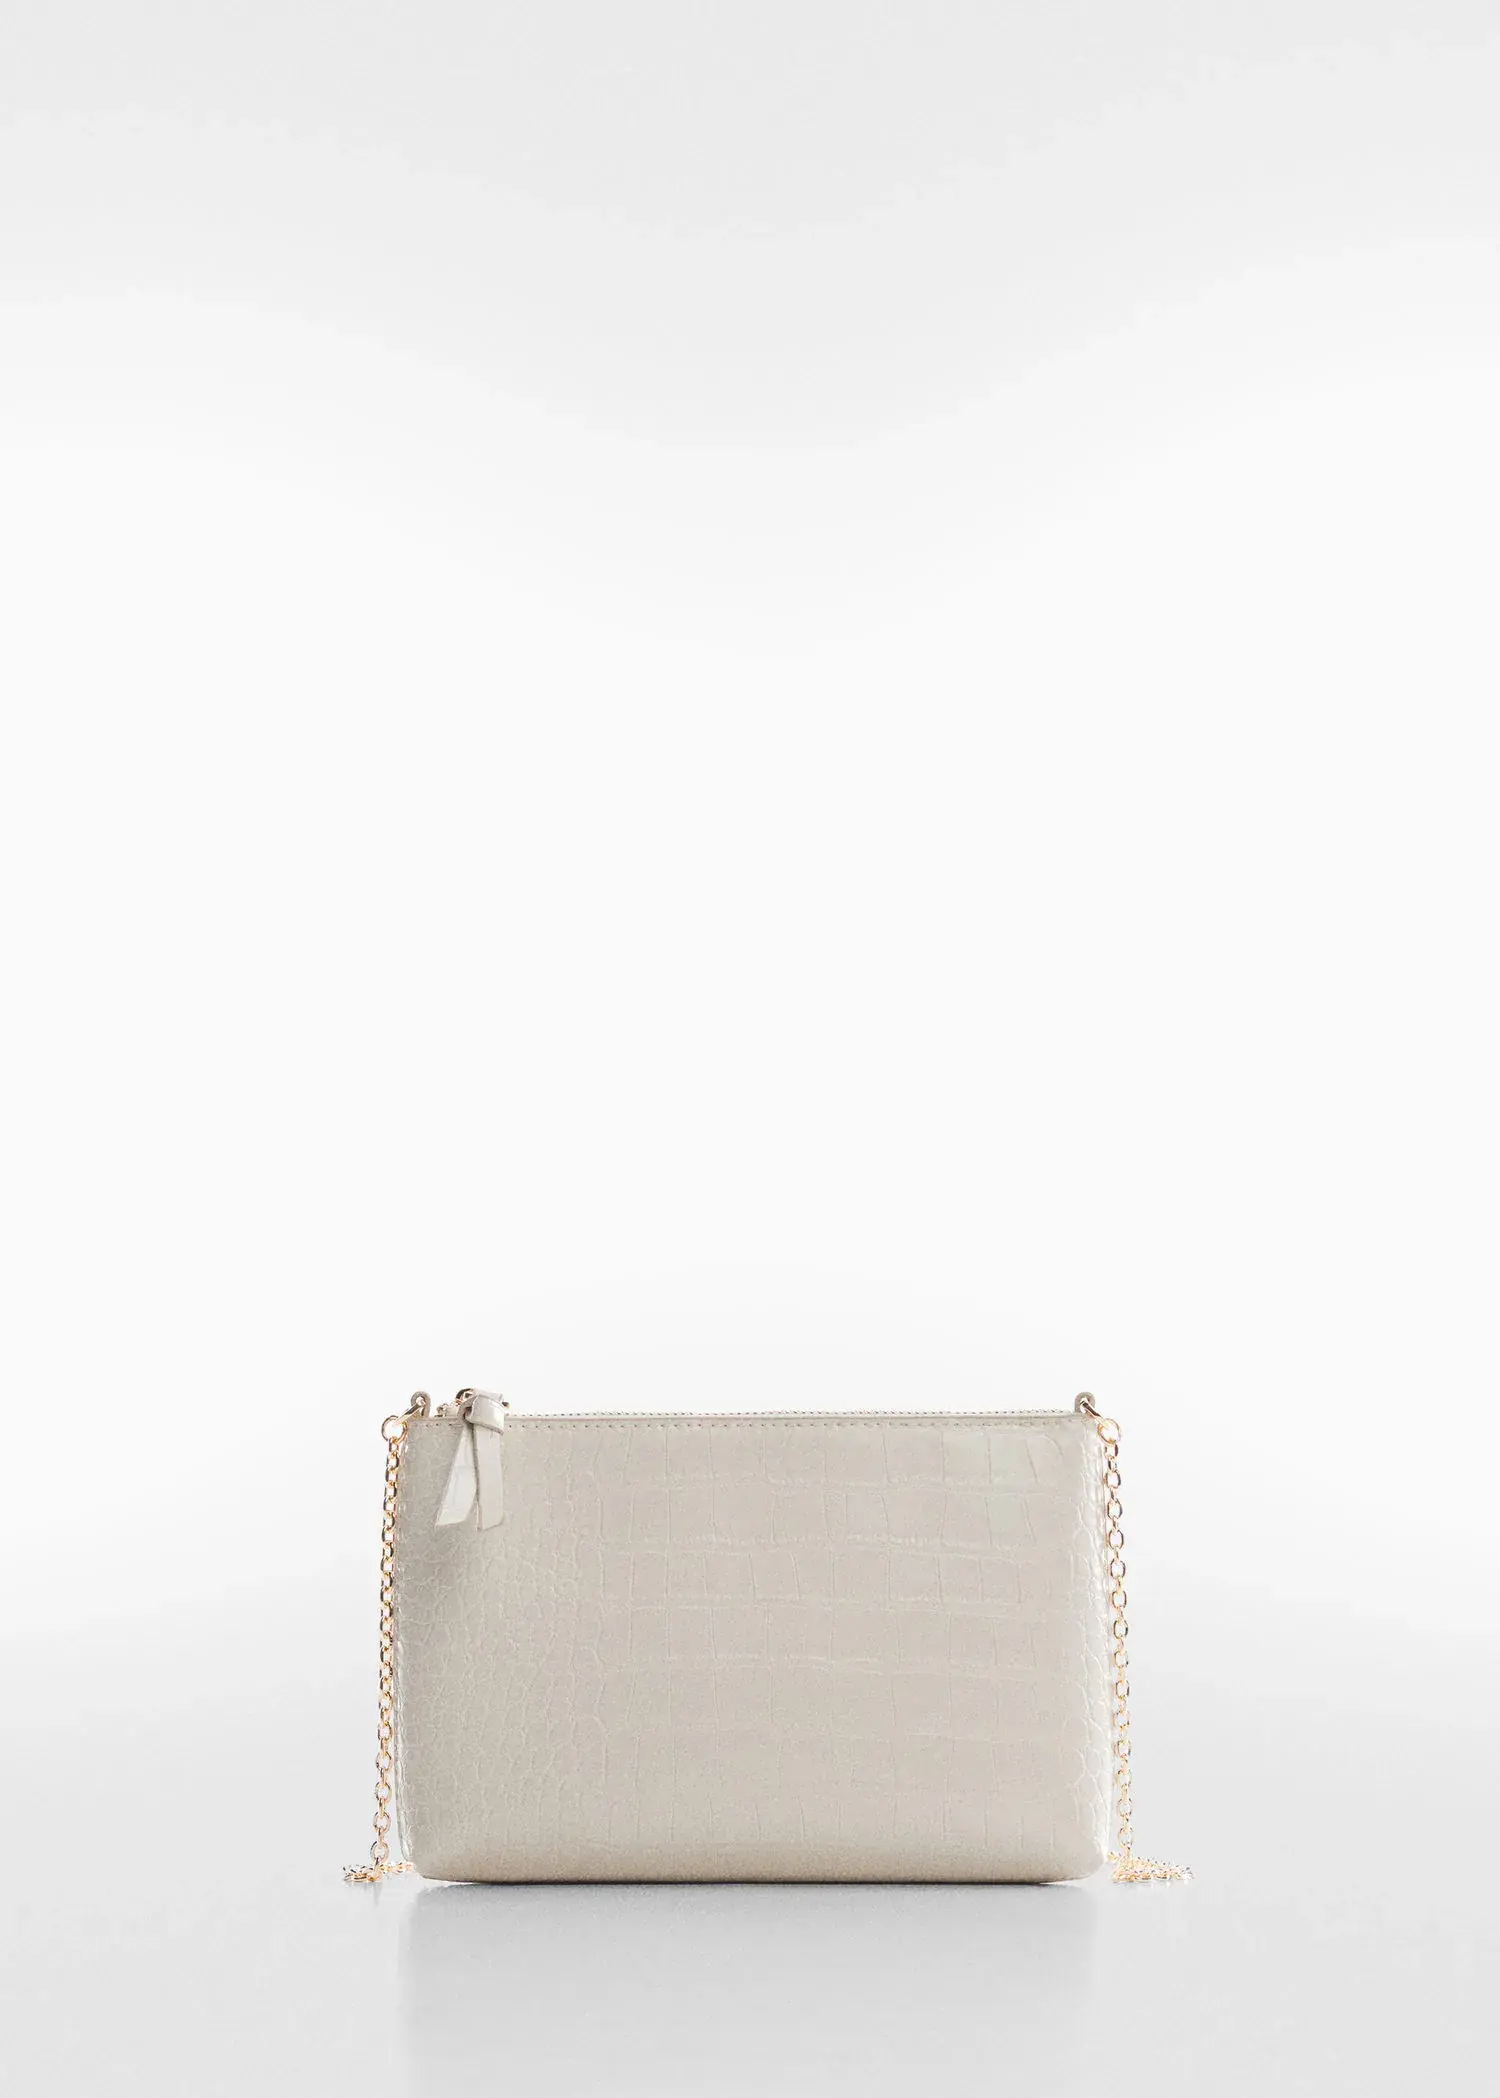 Mango Coco chain bag. a white purse is shown with a chain. 